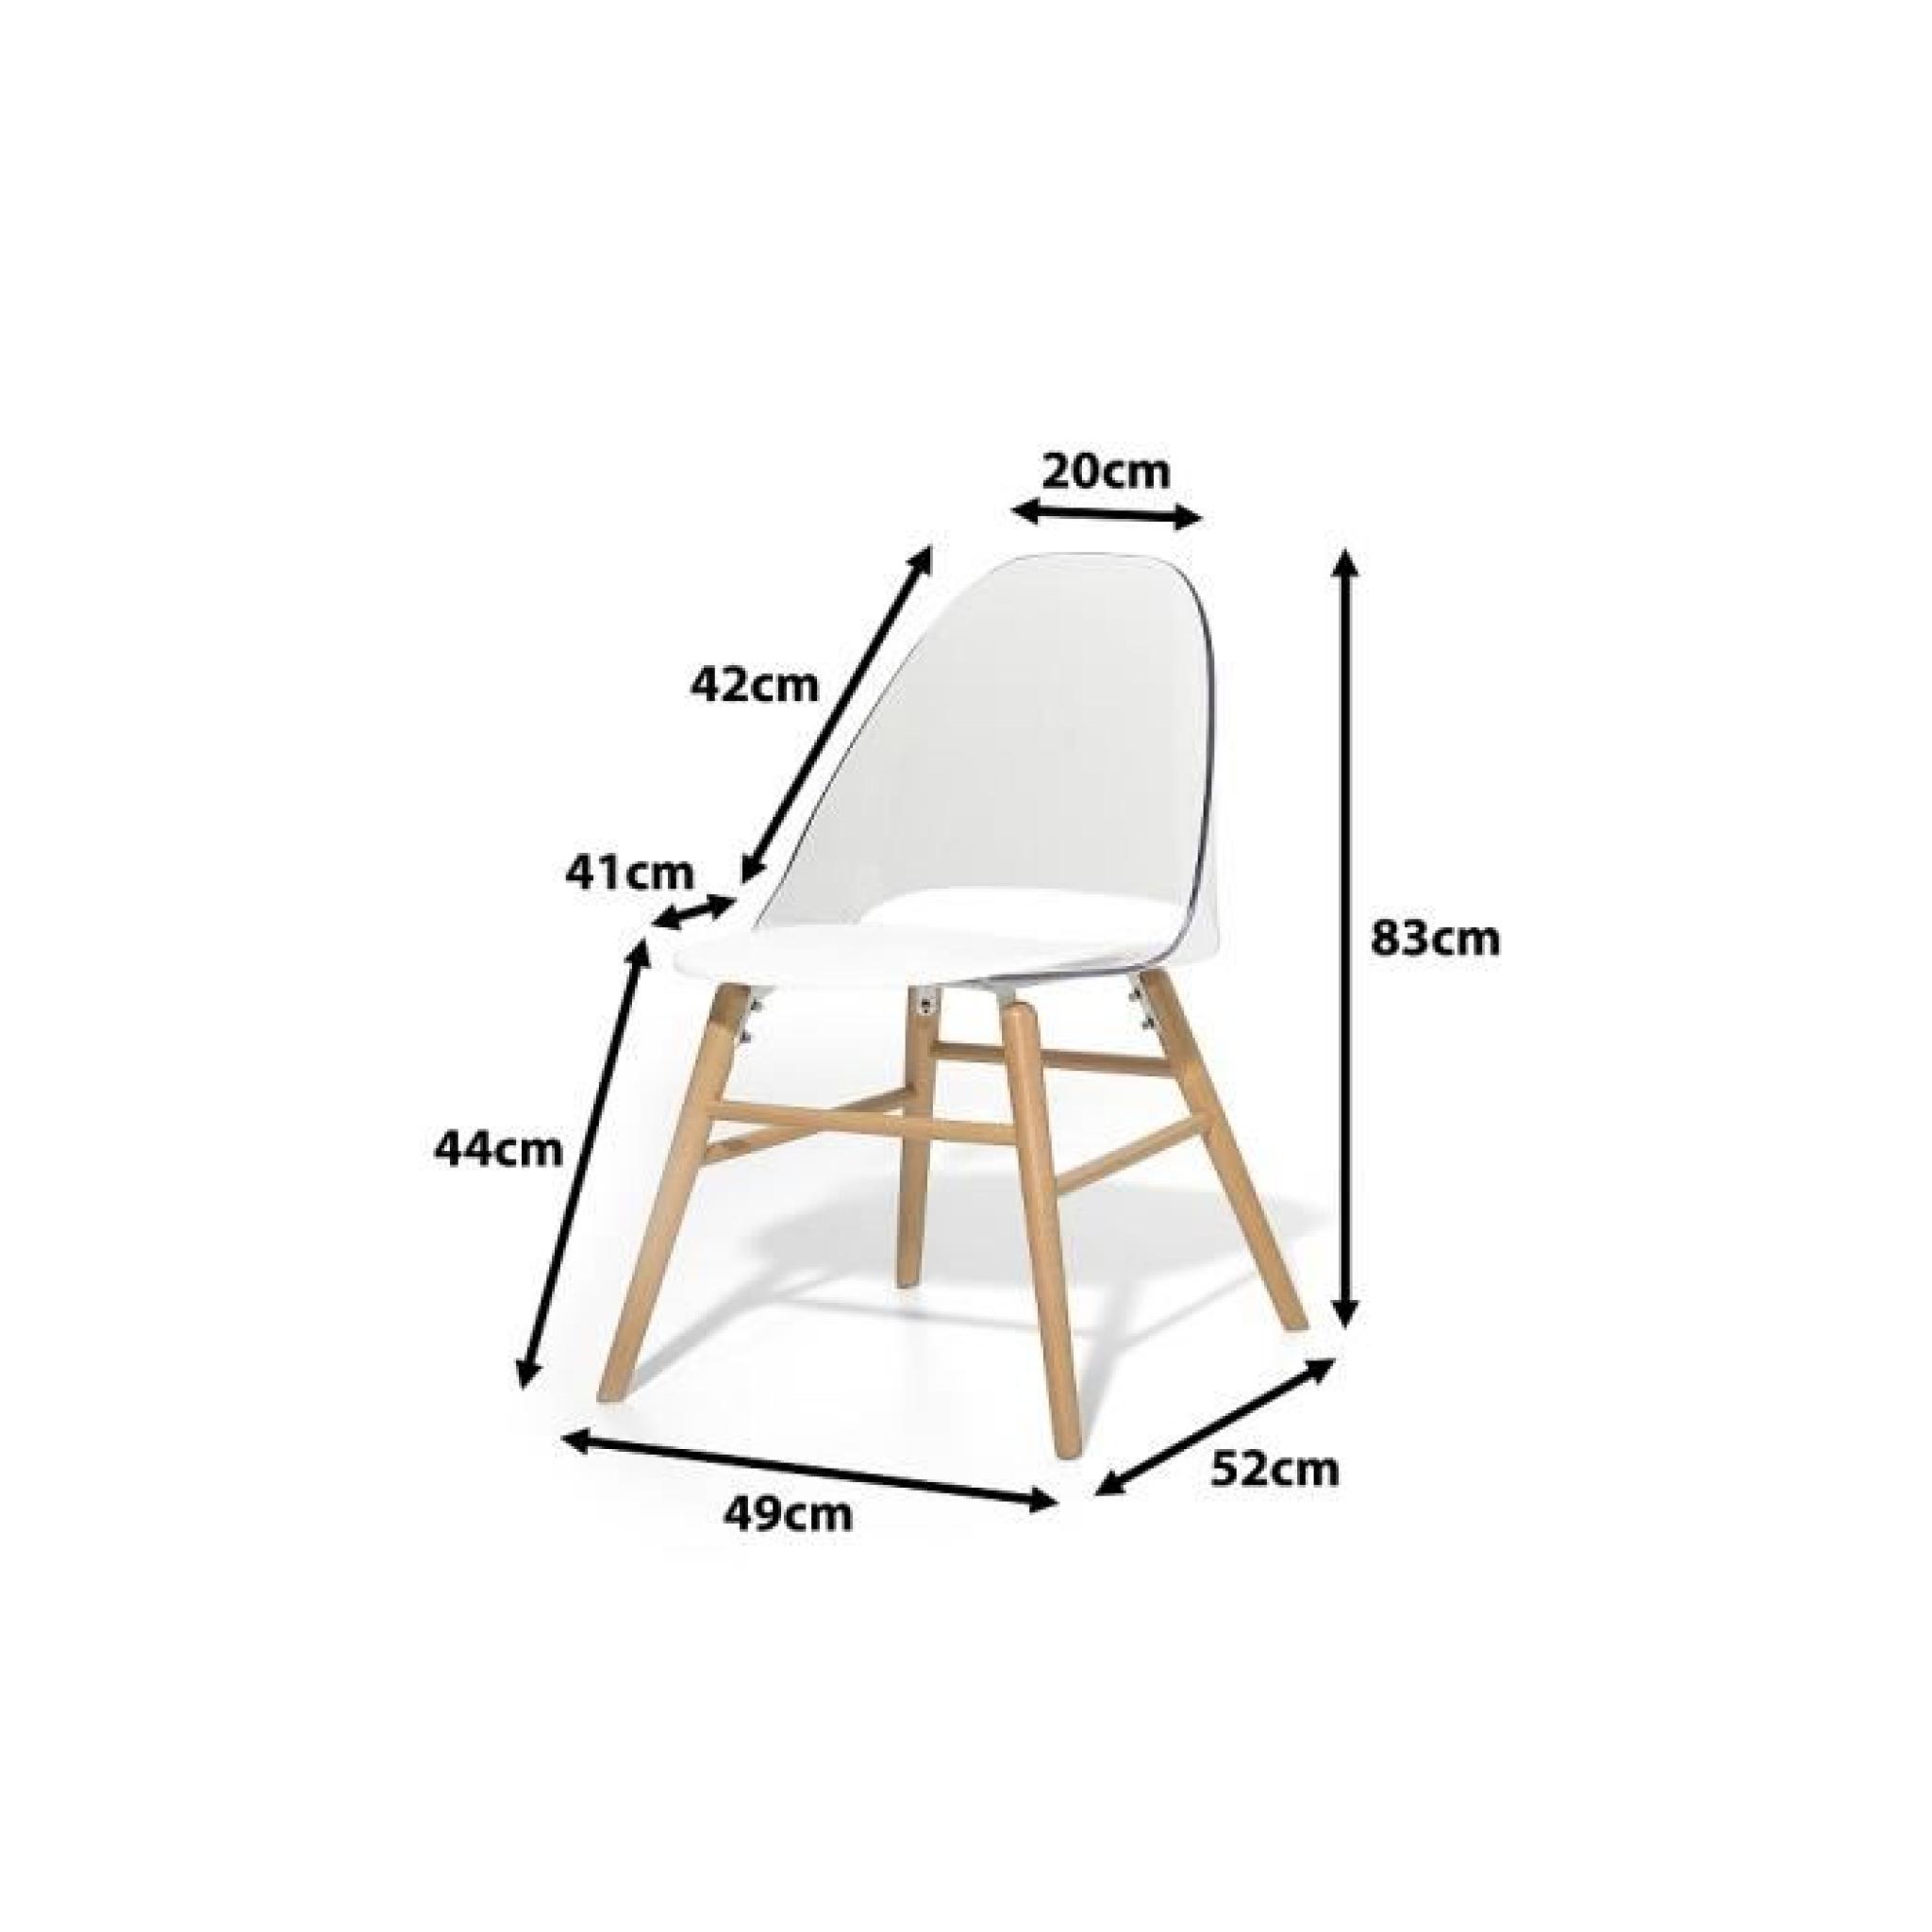 Chaise design - siège en plastique blanc / transparent - Milford pas cher